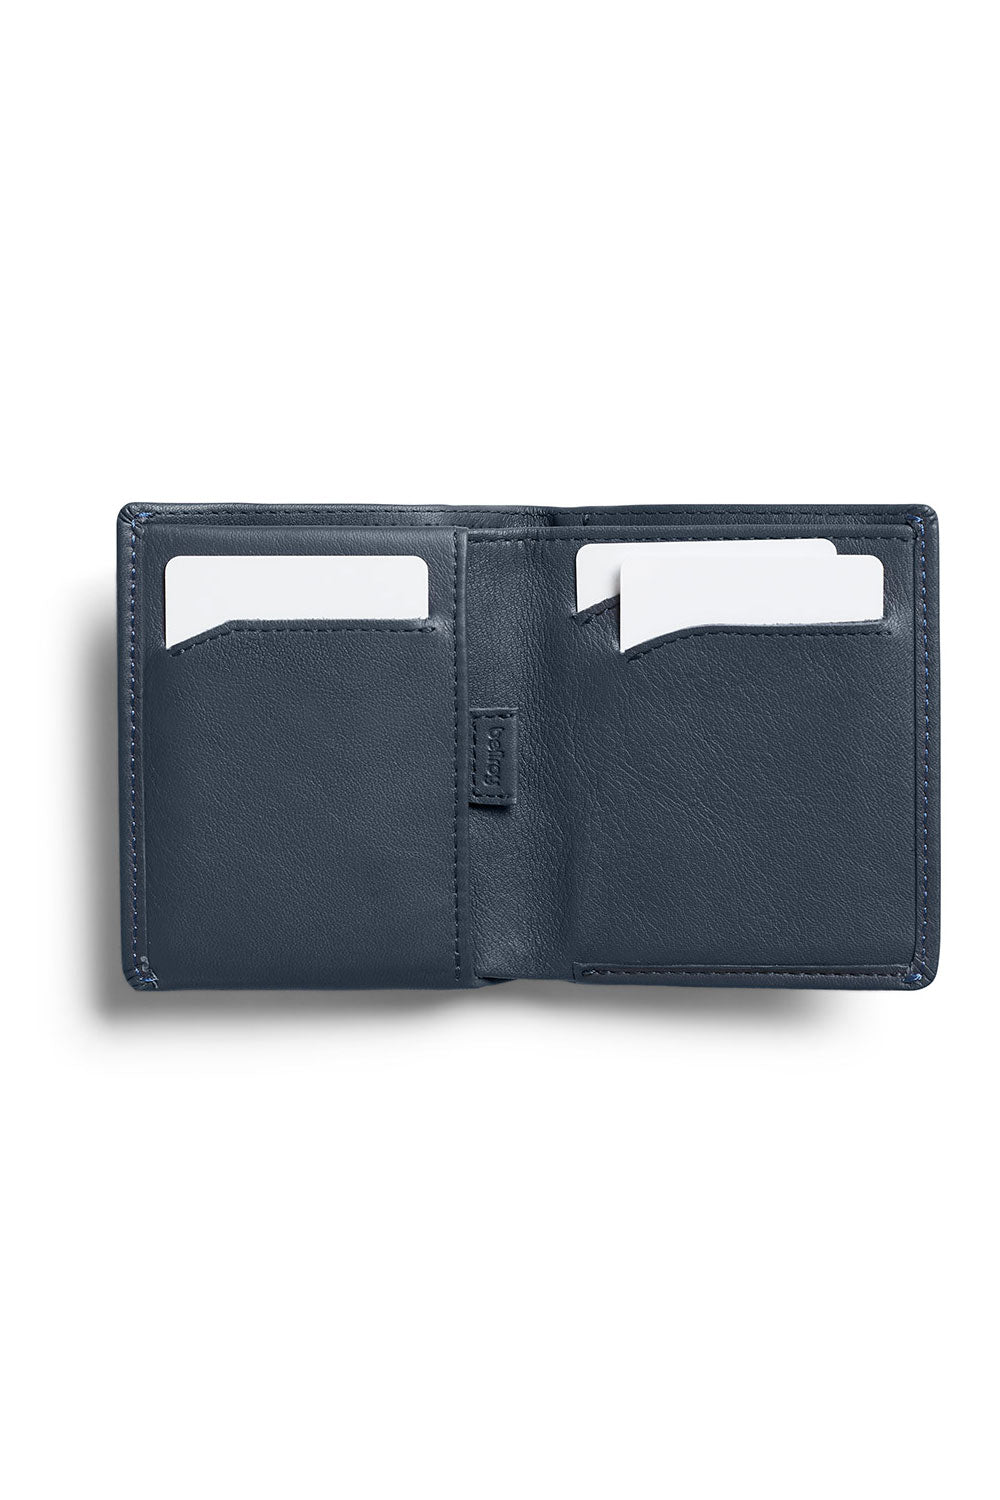 Bellroy - RFID Note Sleeve Wallet - Basalt - Inside